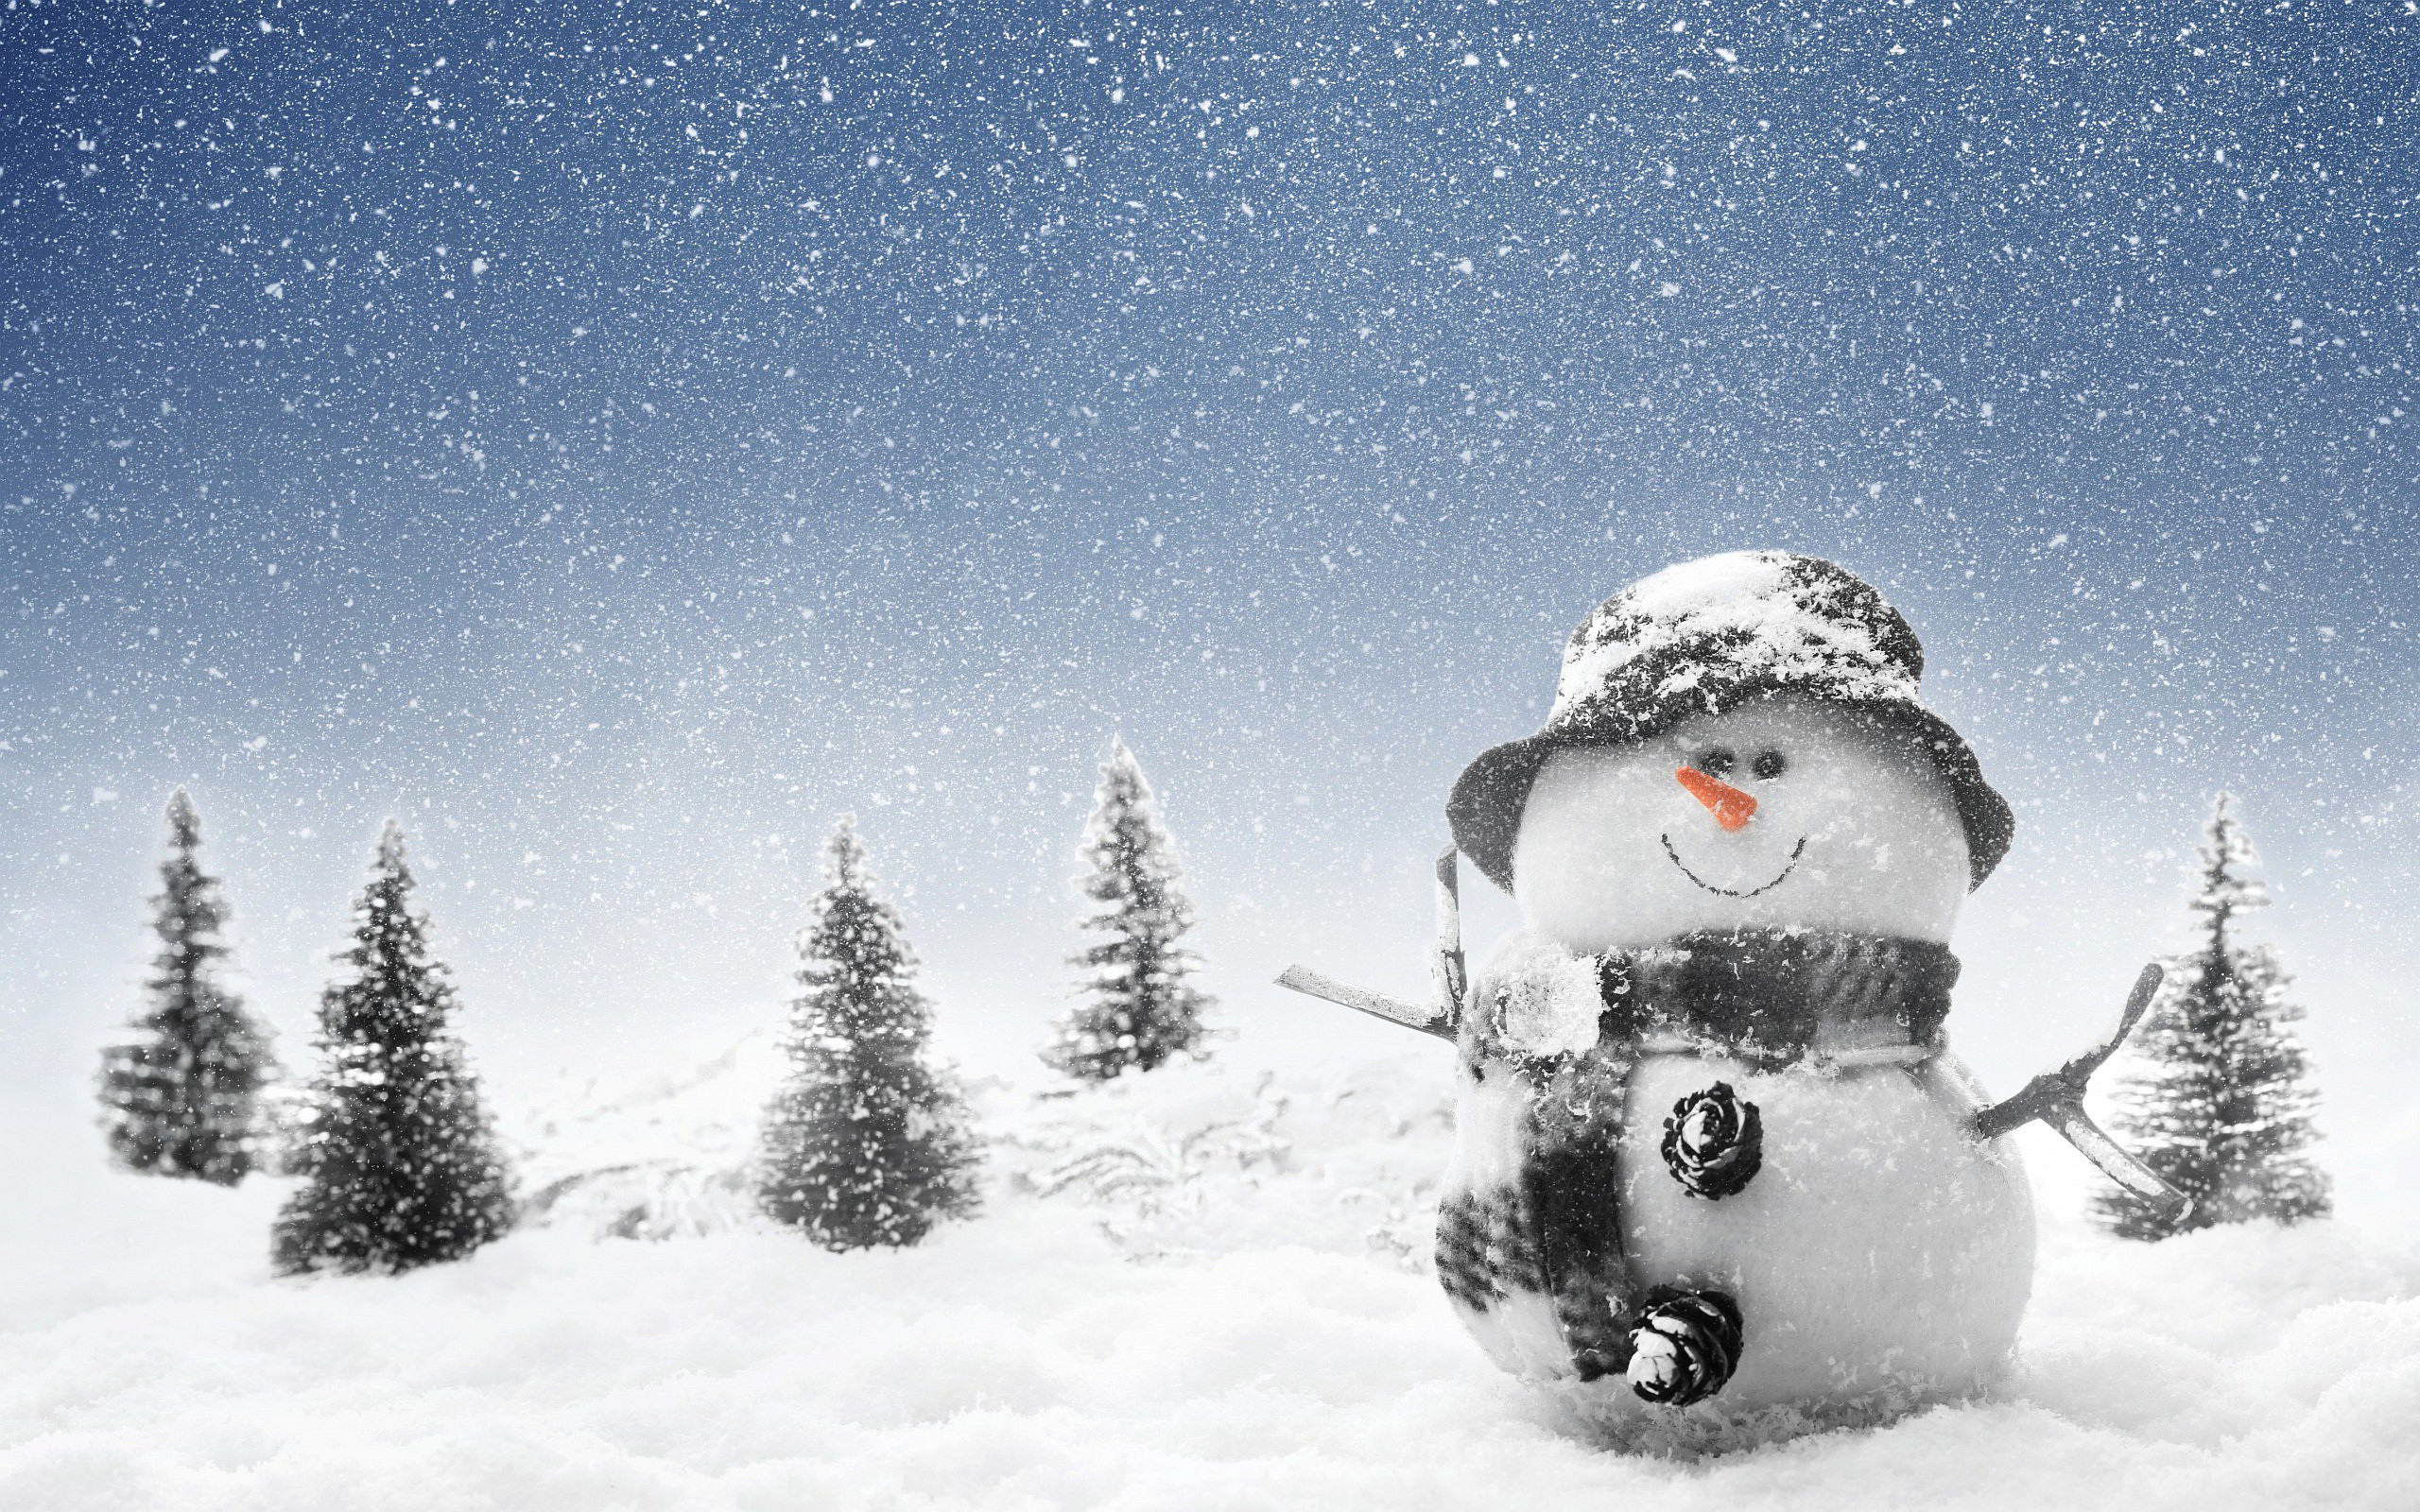 2560x1600 Winter Snowman Wallpaper for Computer